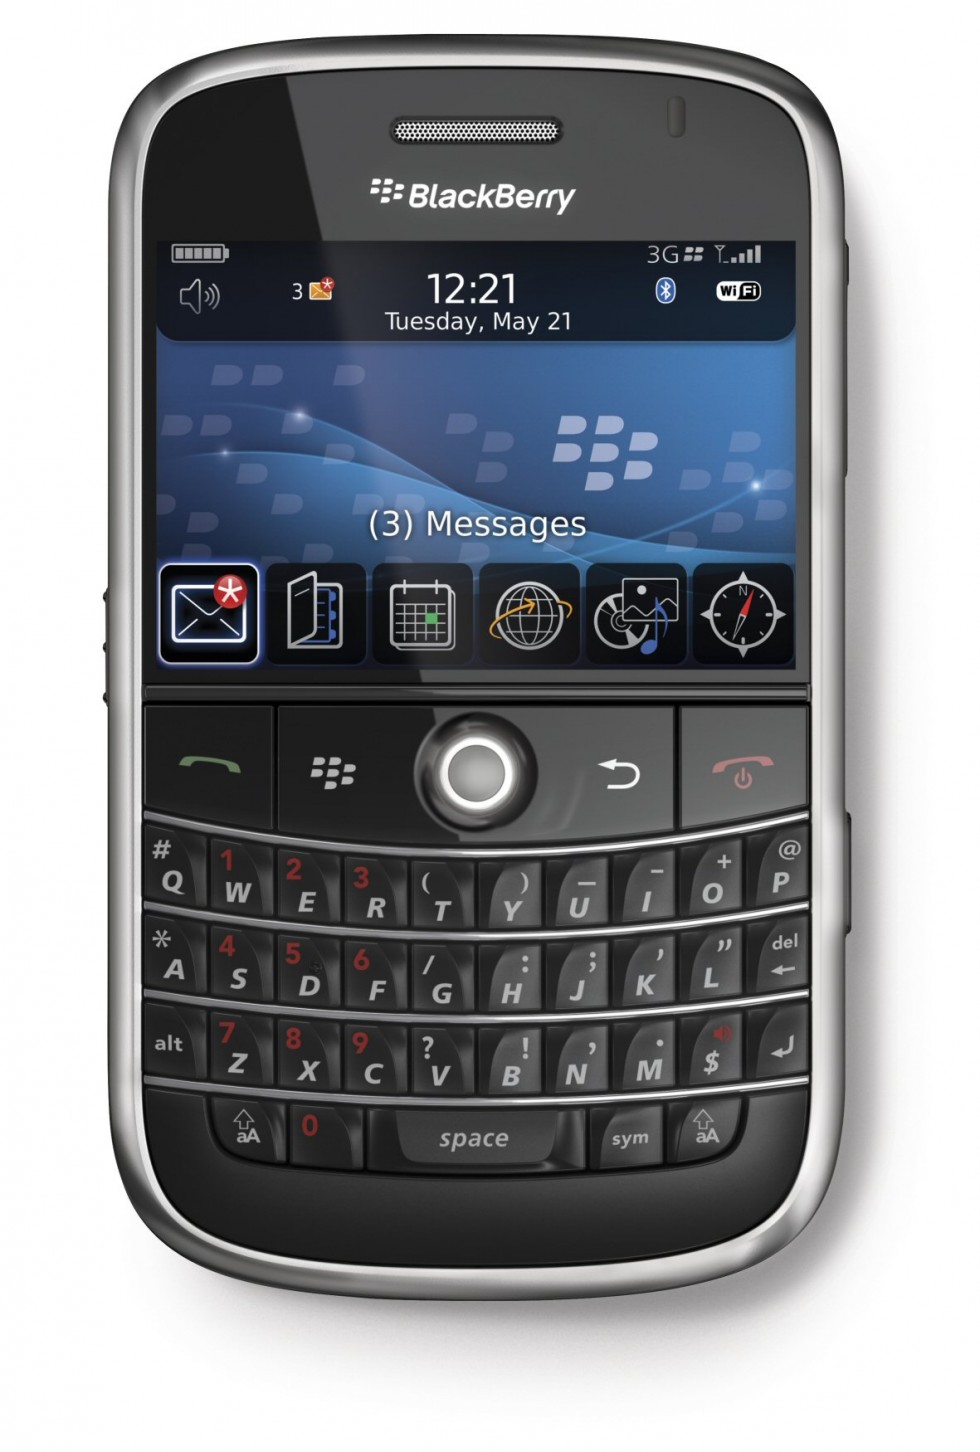 Harga Blackberry Akhir Maret sampai Awal April 2013